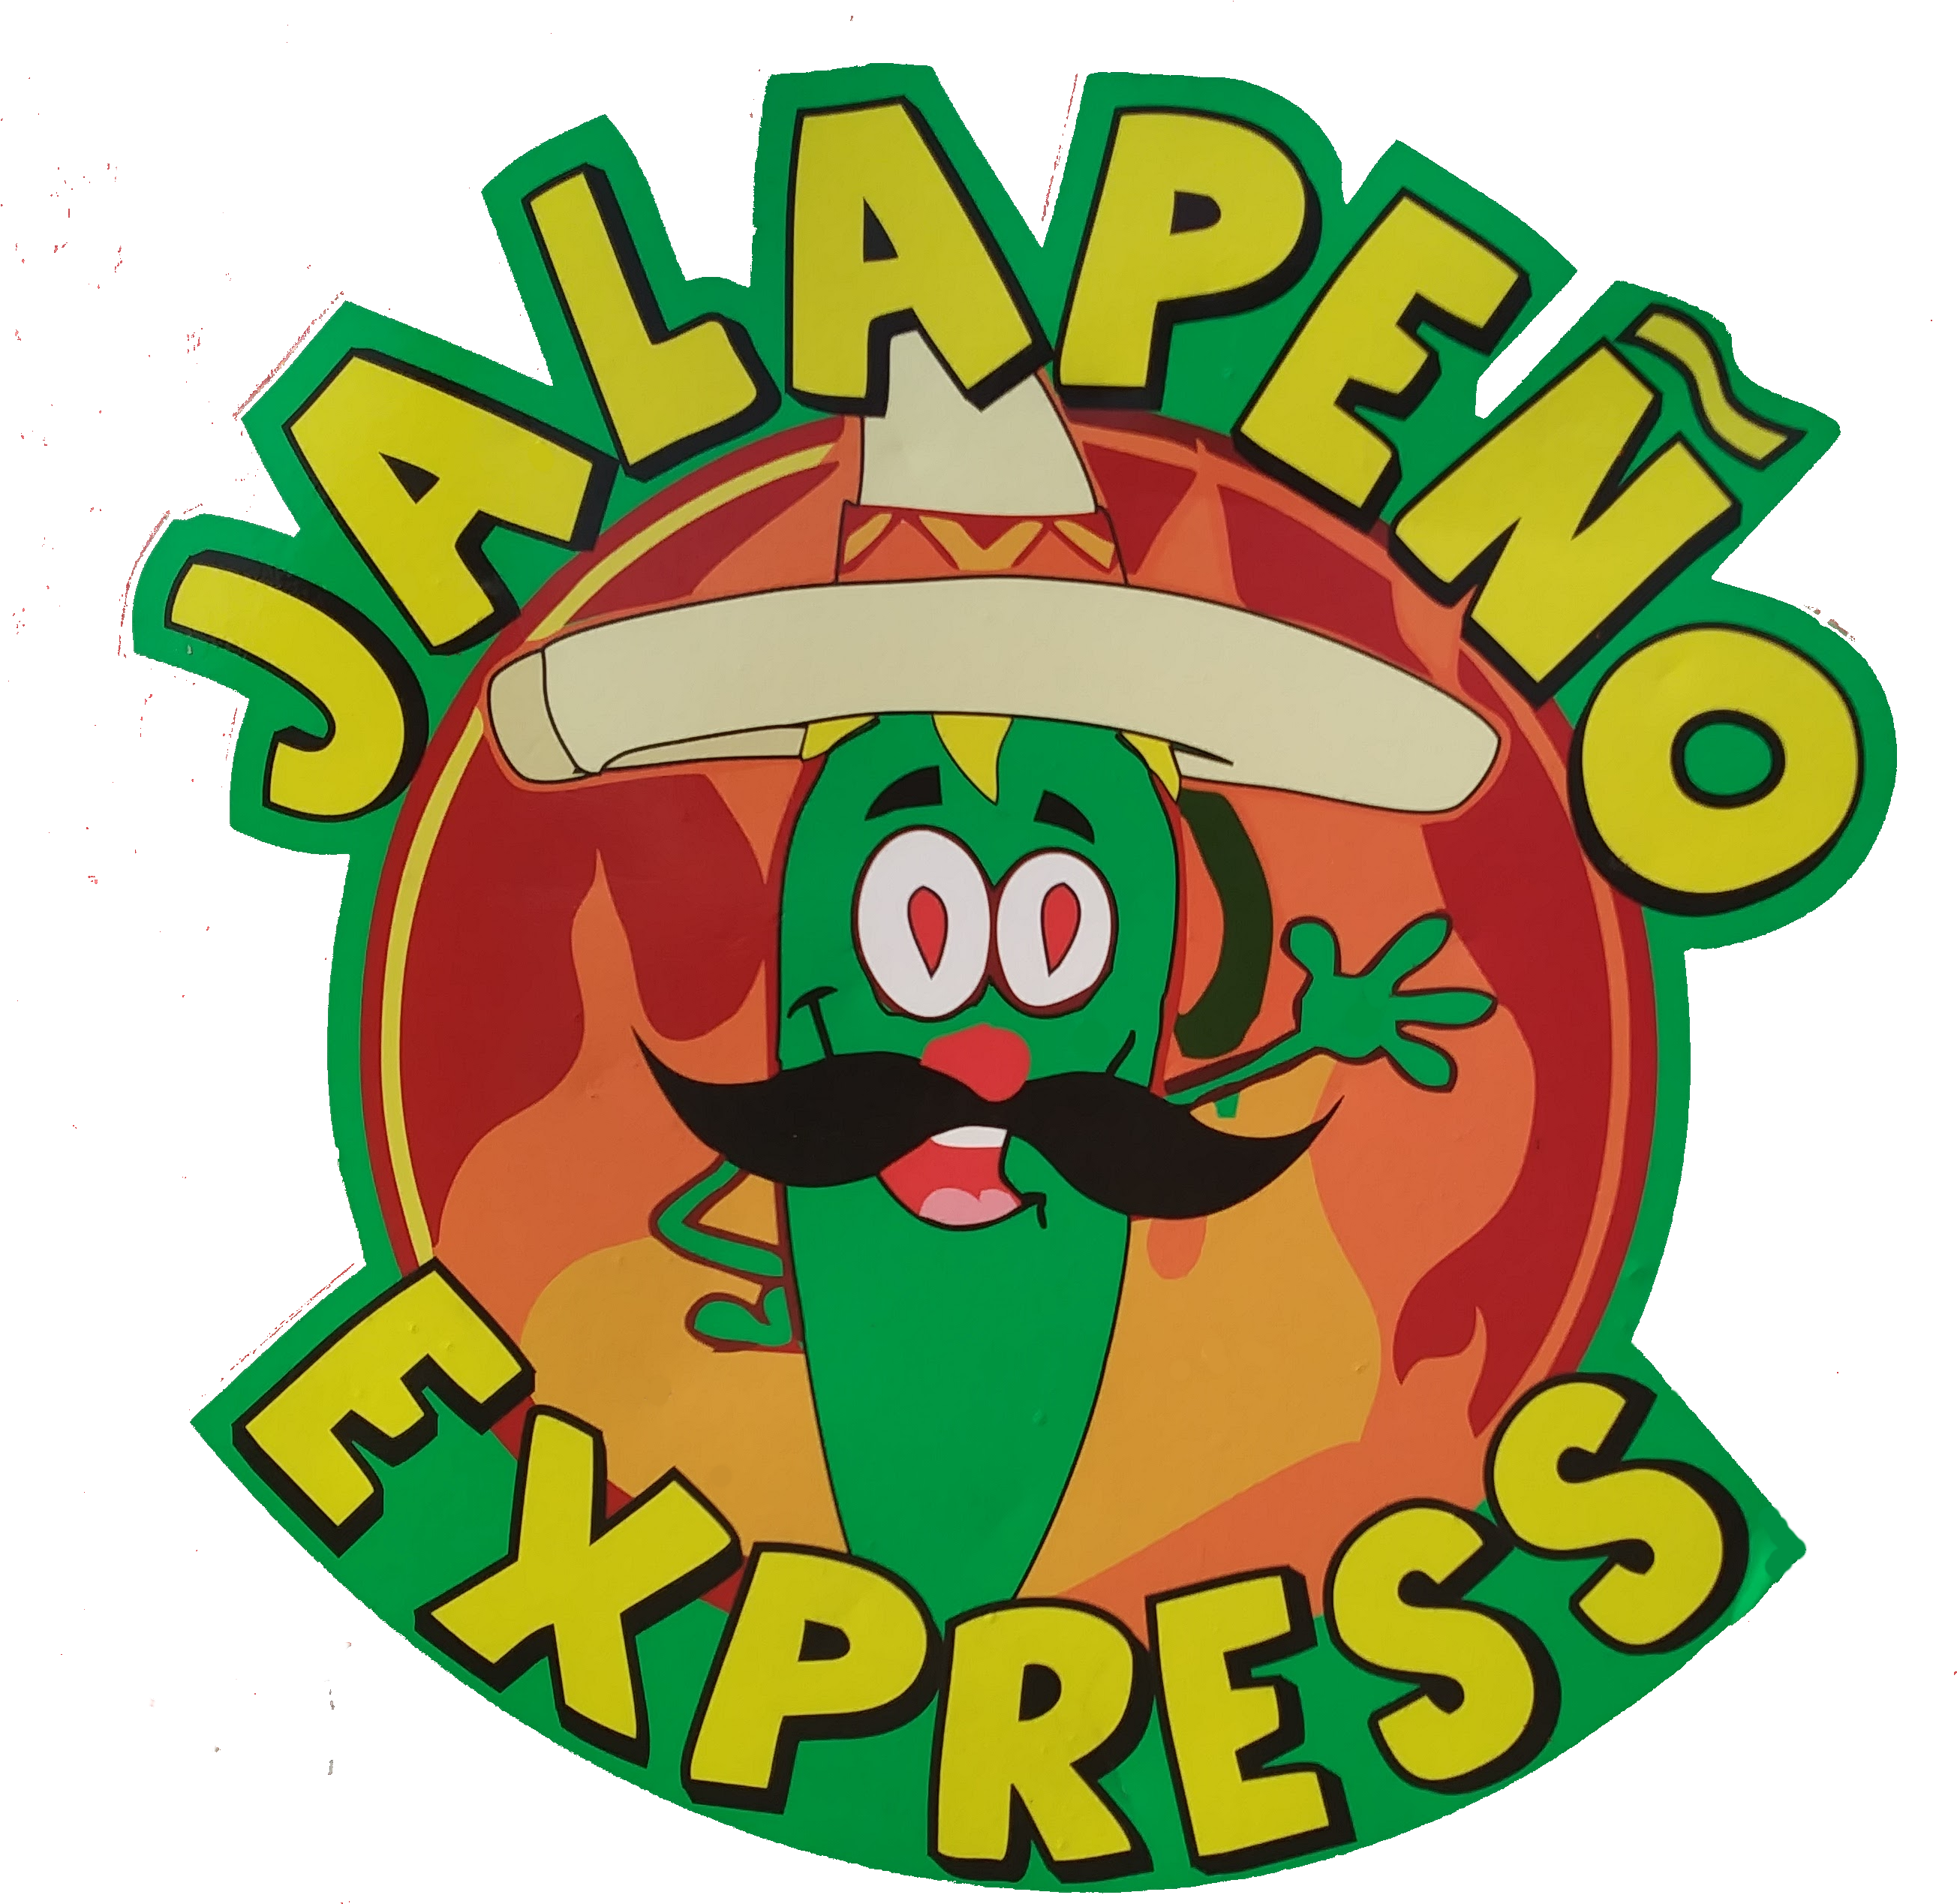 Jalapeno Express - Jalapeno Express (2746x2681)